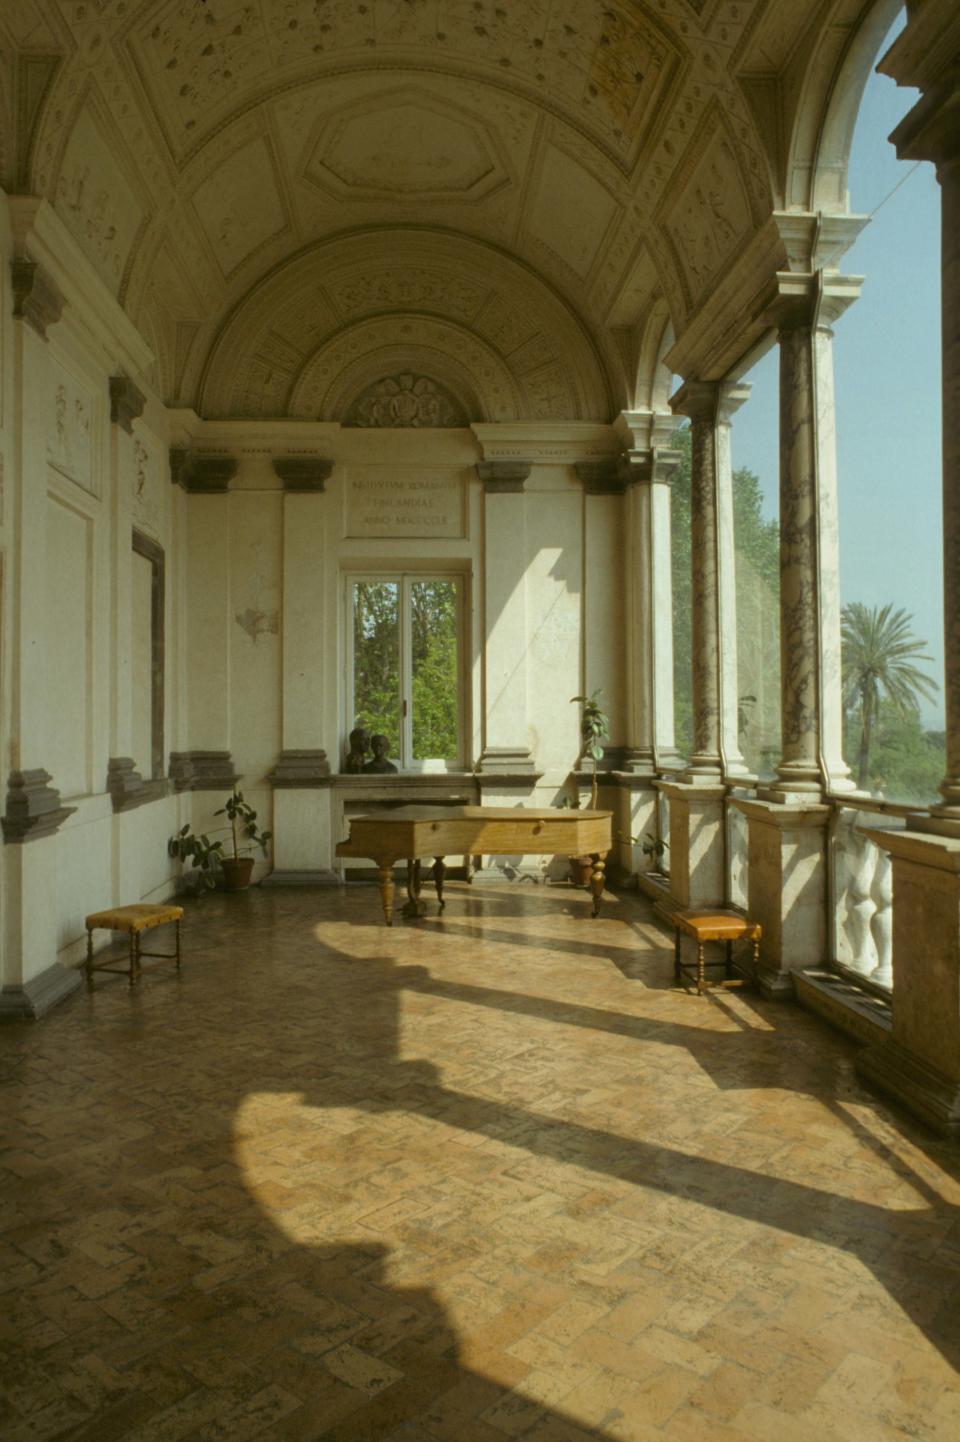 Villa Lante.